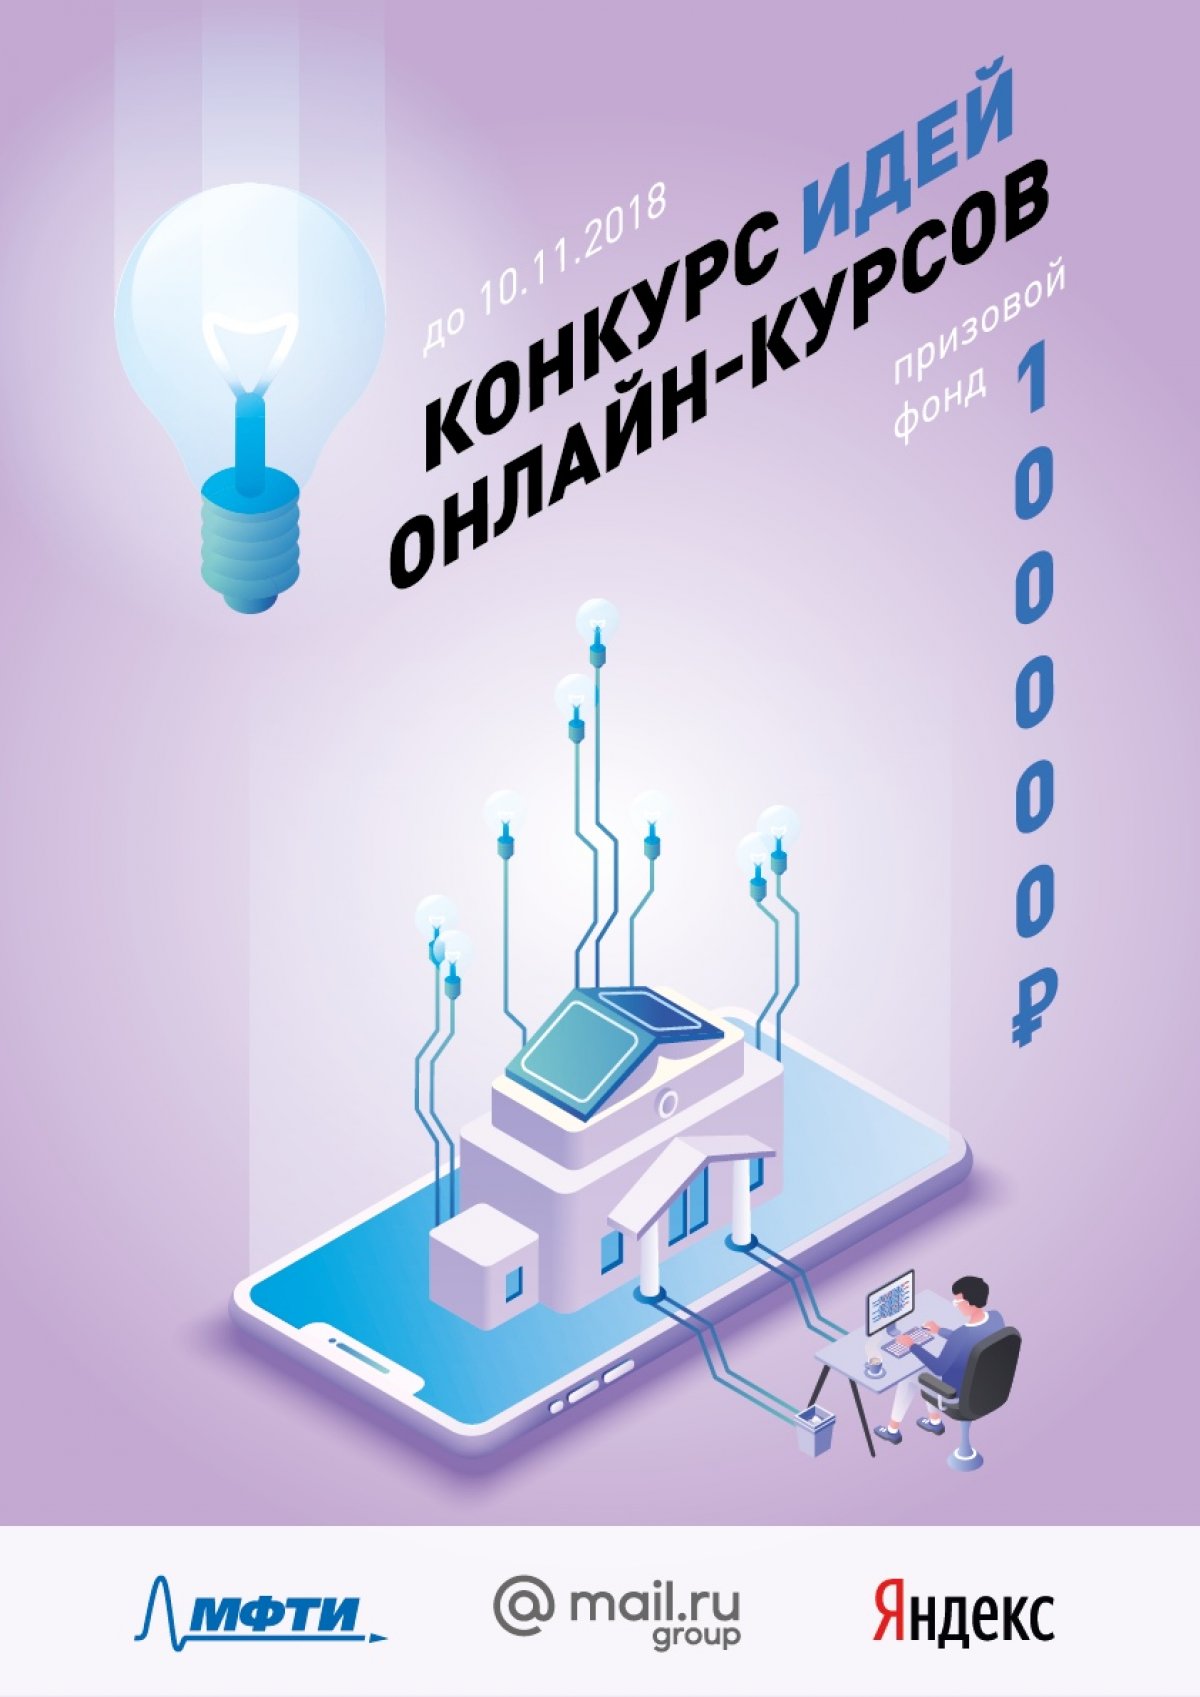 МФТИ запускает конкурс идей для онлайн-курсов с призовым фондом в 100 тысяч рублей.